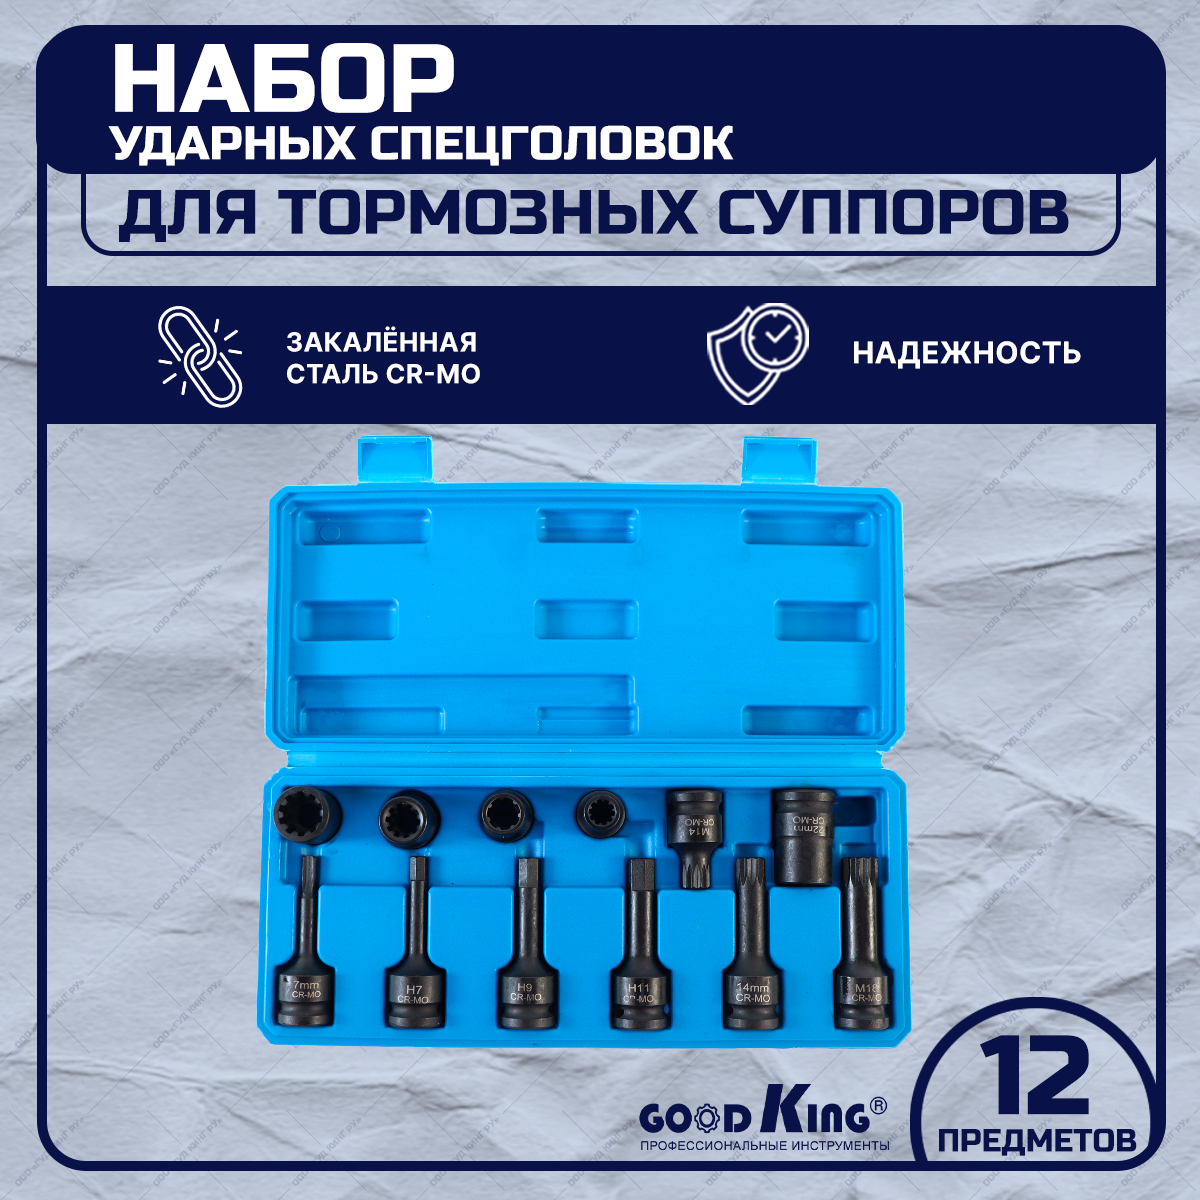 Набор ударных спецголовок для тормозных суппортов GOODKING UST-10012 12 предметов торцевая головка для регулировки тормозных суппортов мастак